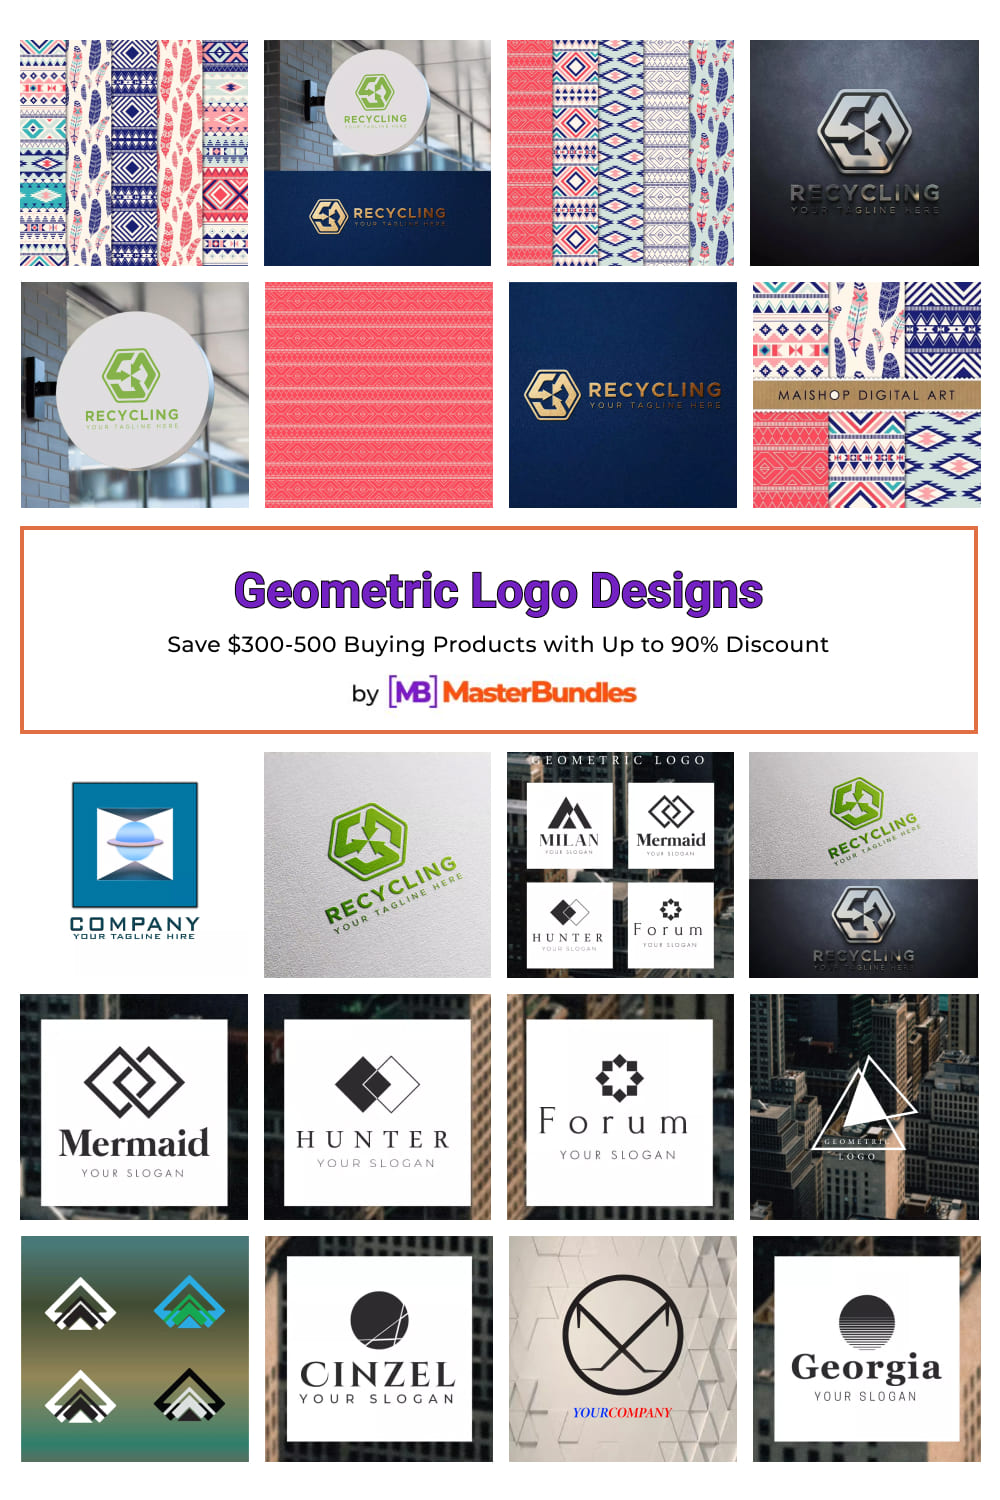 Geometric Logo Designs for Pinterest.